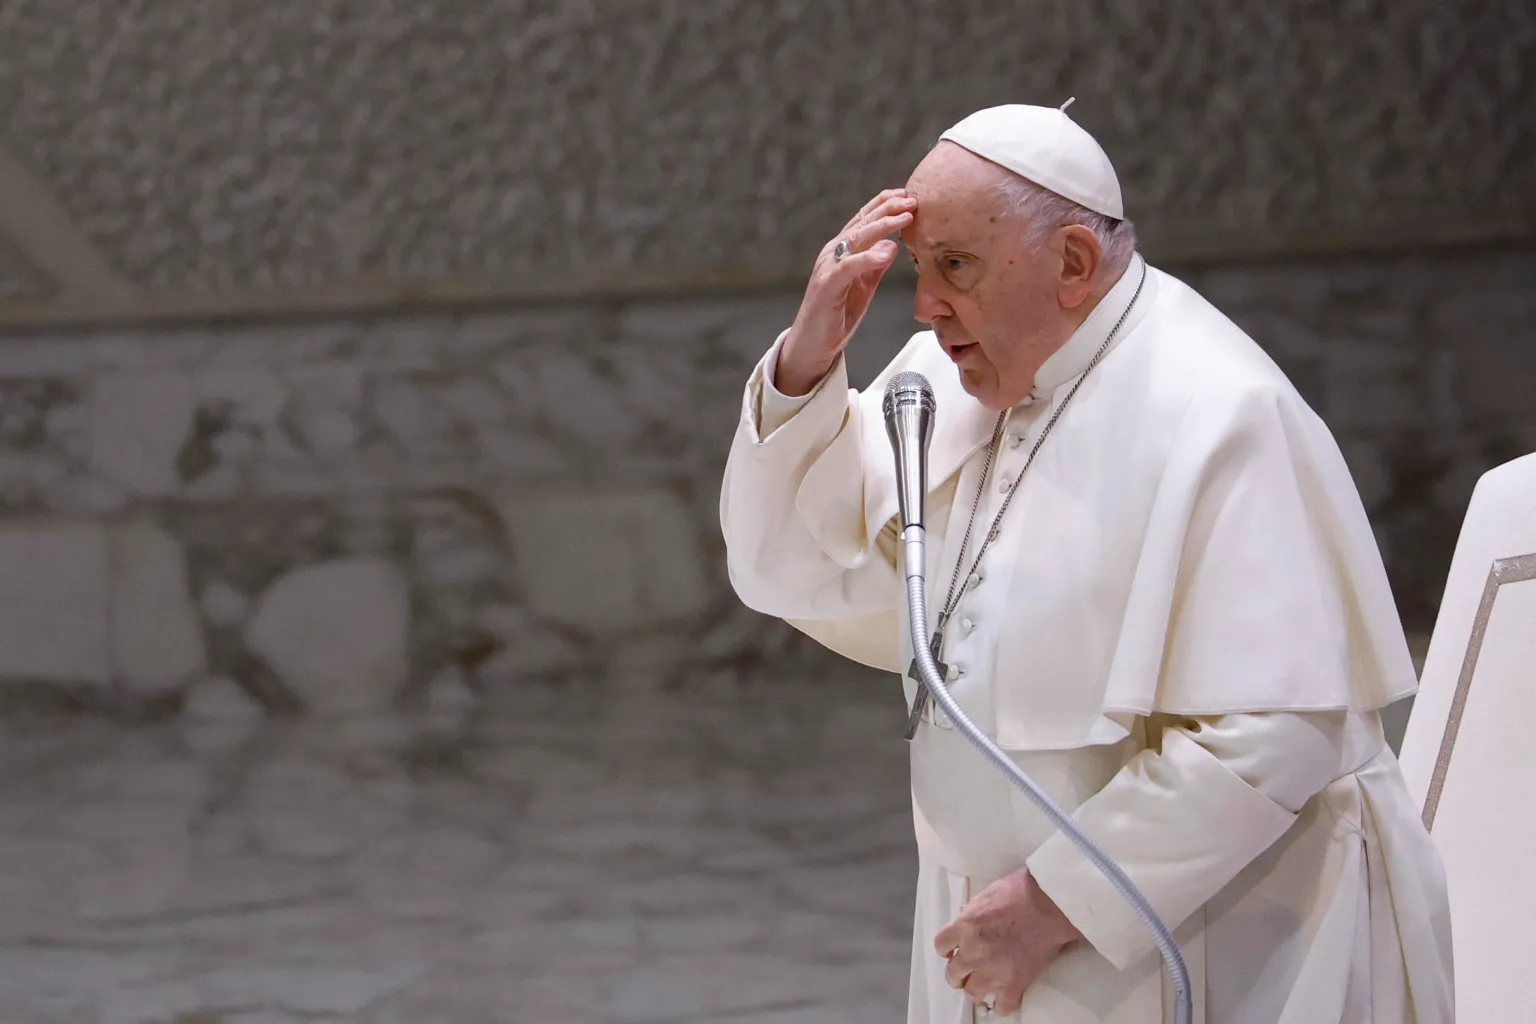 El papa Francisco lanzó un llamado urgente contra la espiral de violencia tras ataque de Irán contra Israel